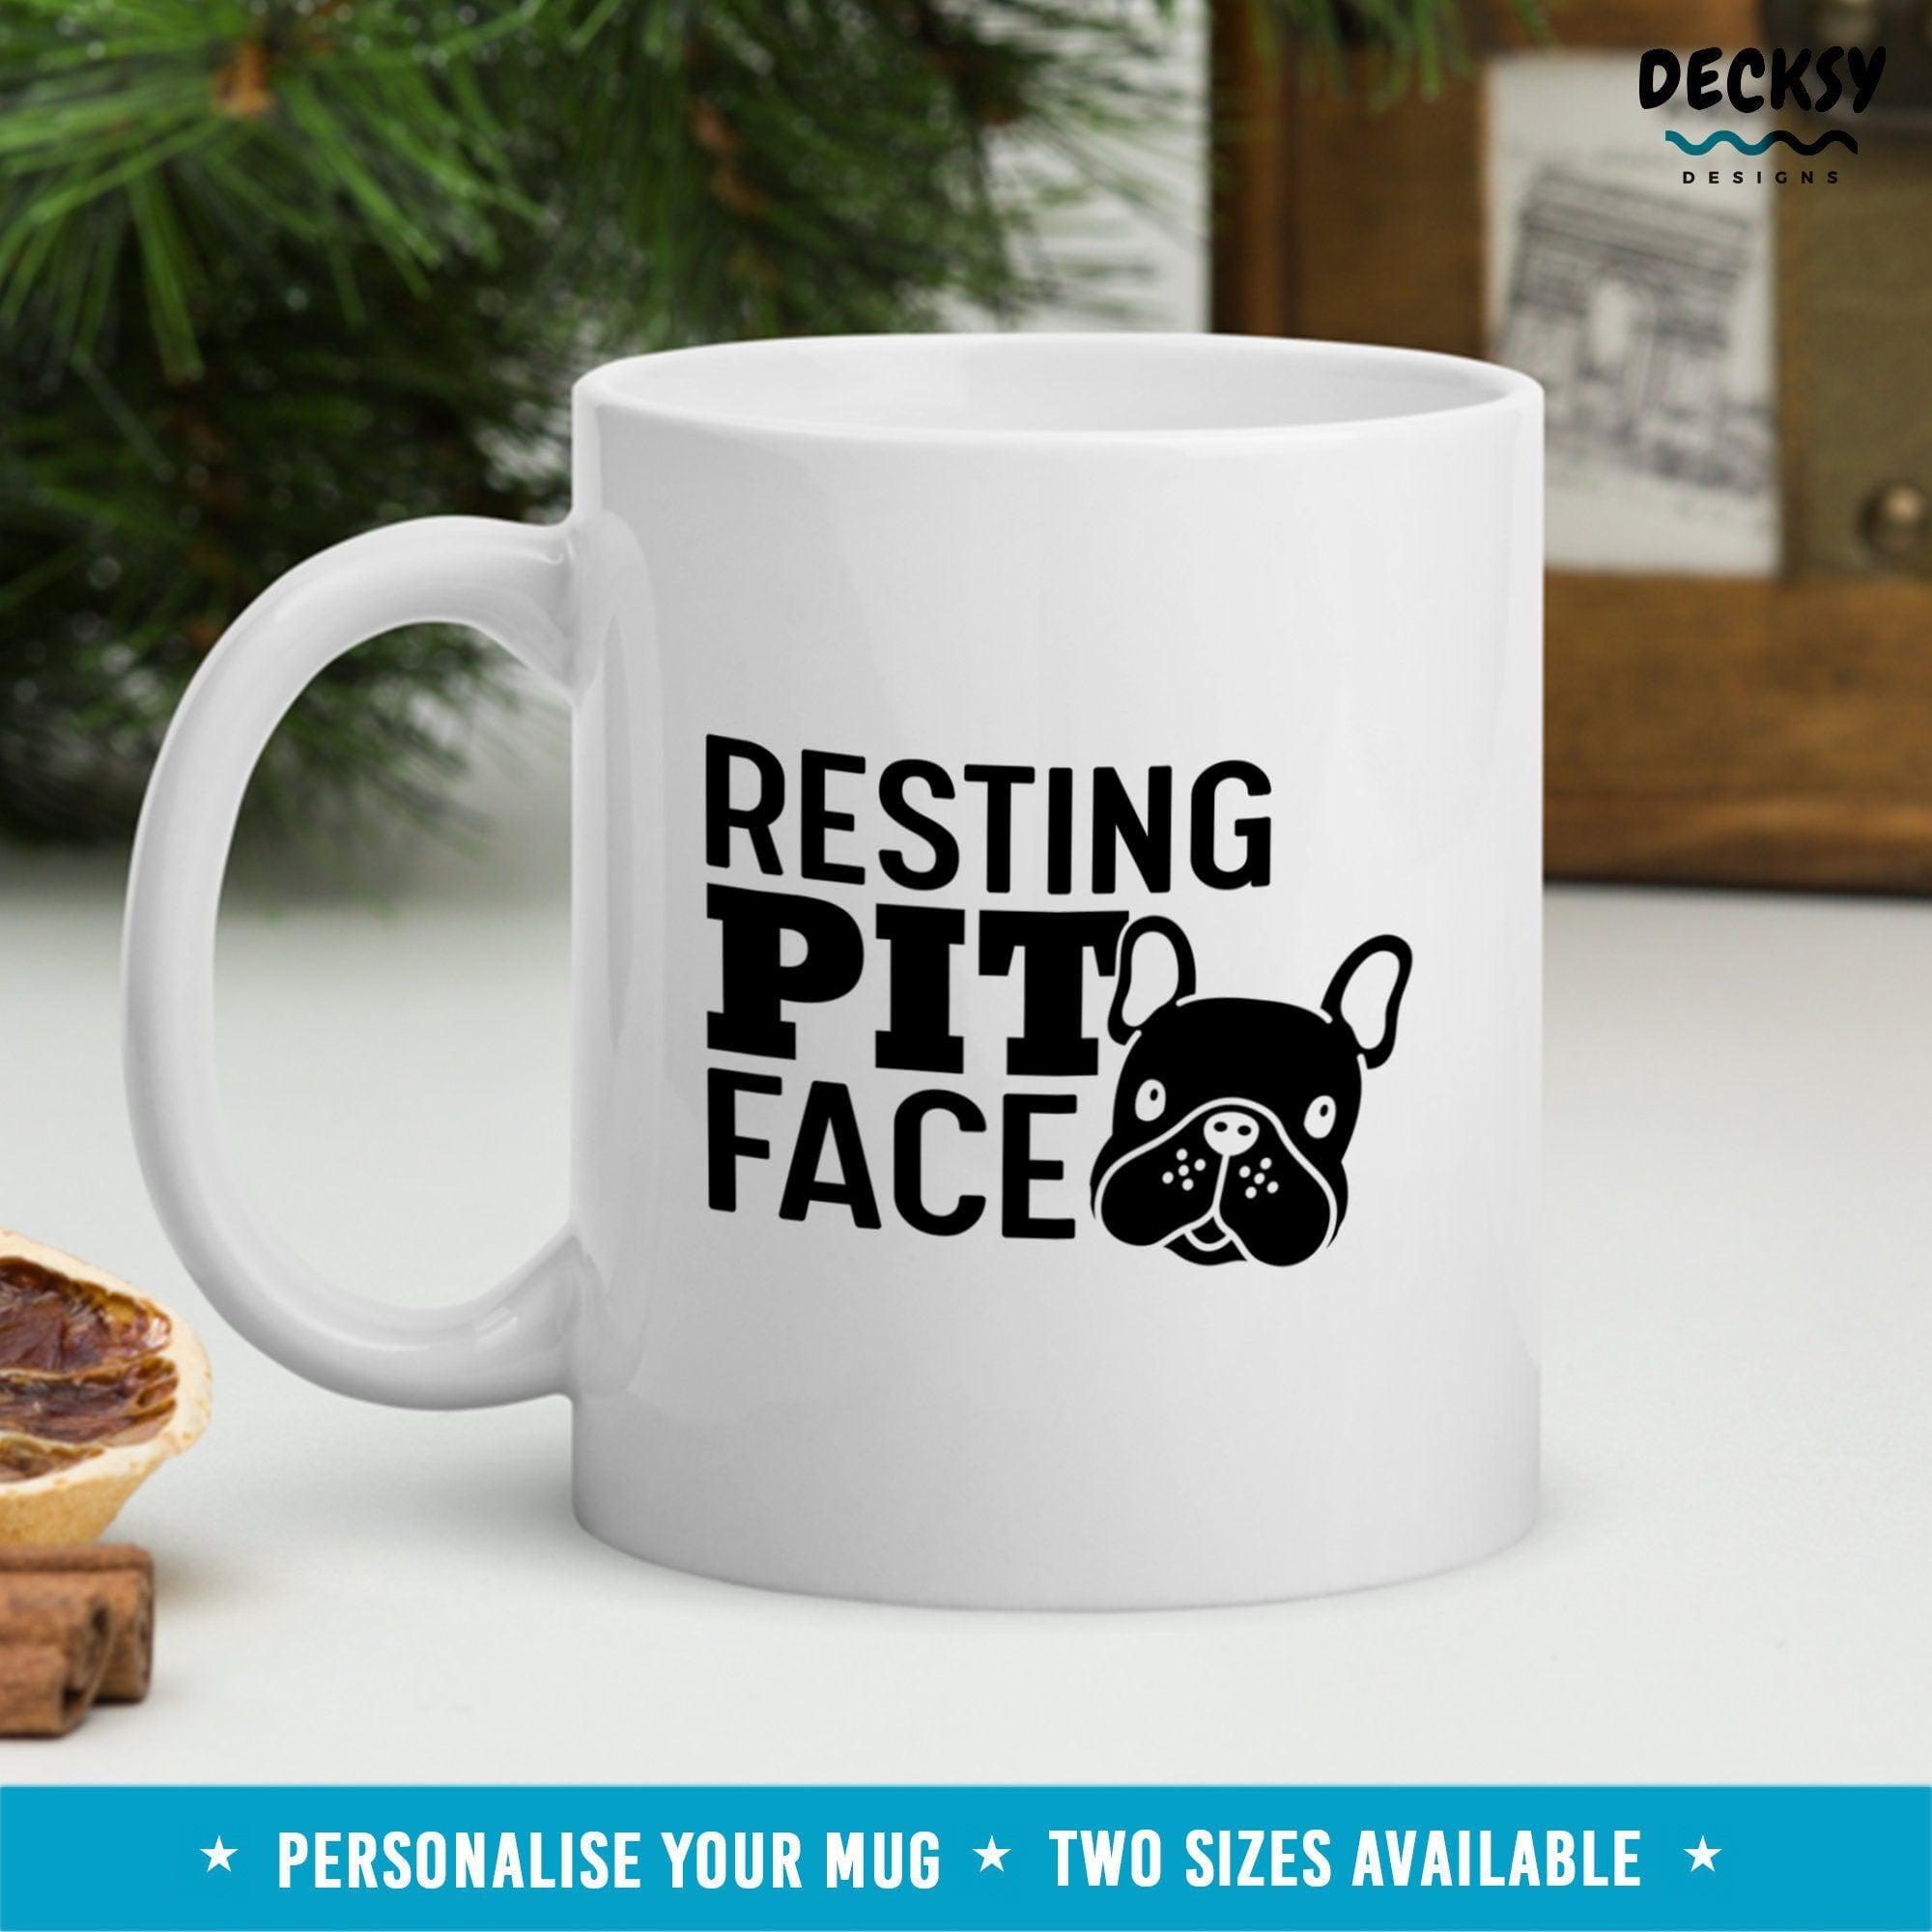 Pitbull Coffee Mug, Pitbull Owner Gift-Home & Living:Kitchen & Dining:Drink & Barware:Drinkware:Mugs-DecksyDesigns-White Mug 11 oz-NO PERSONALISATION-DecksyDesigns